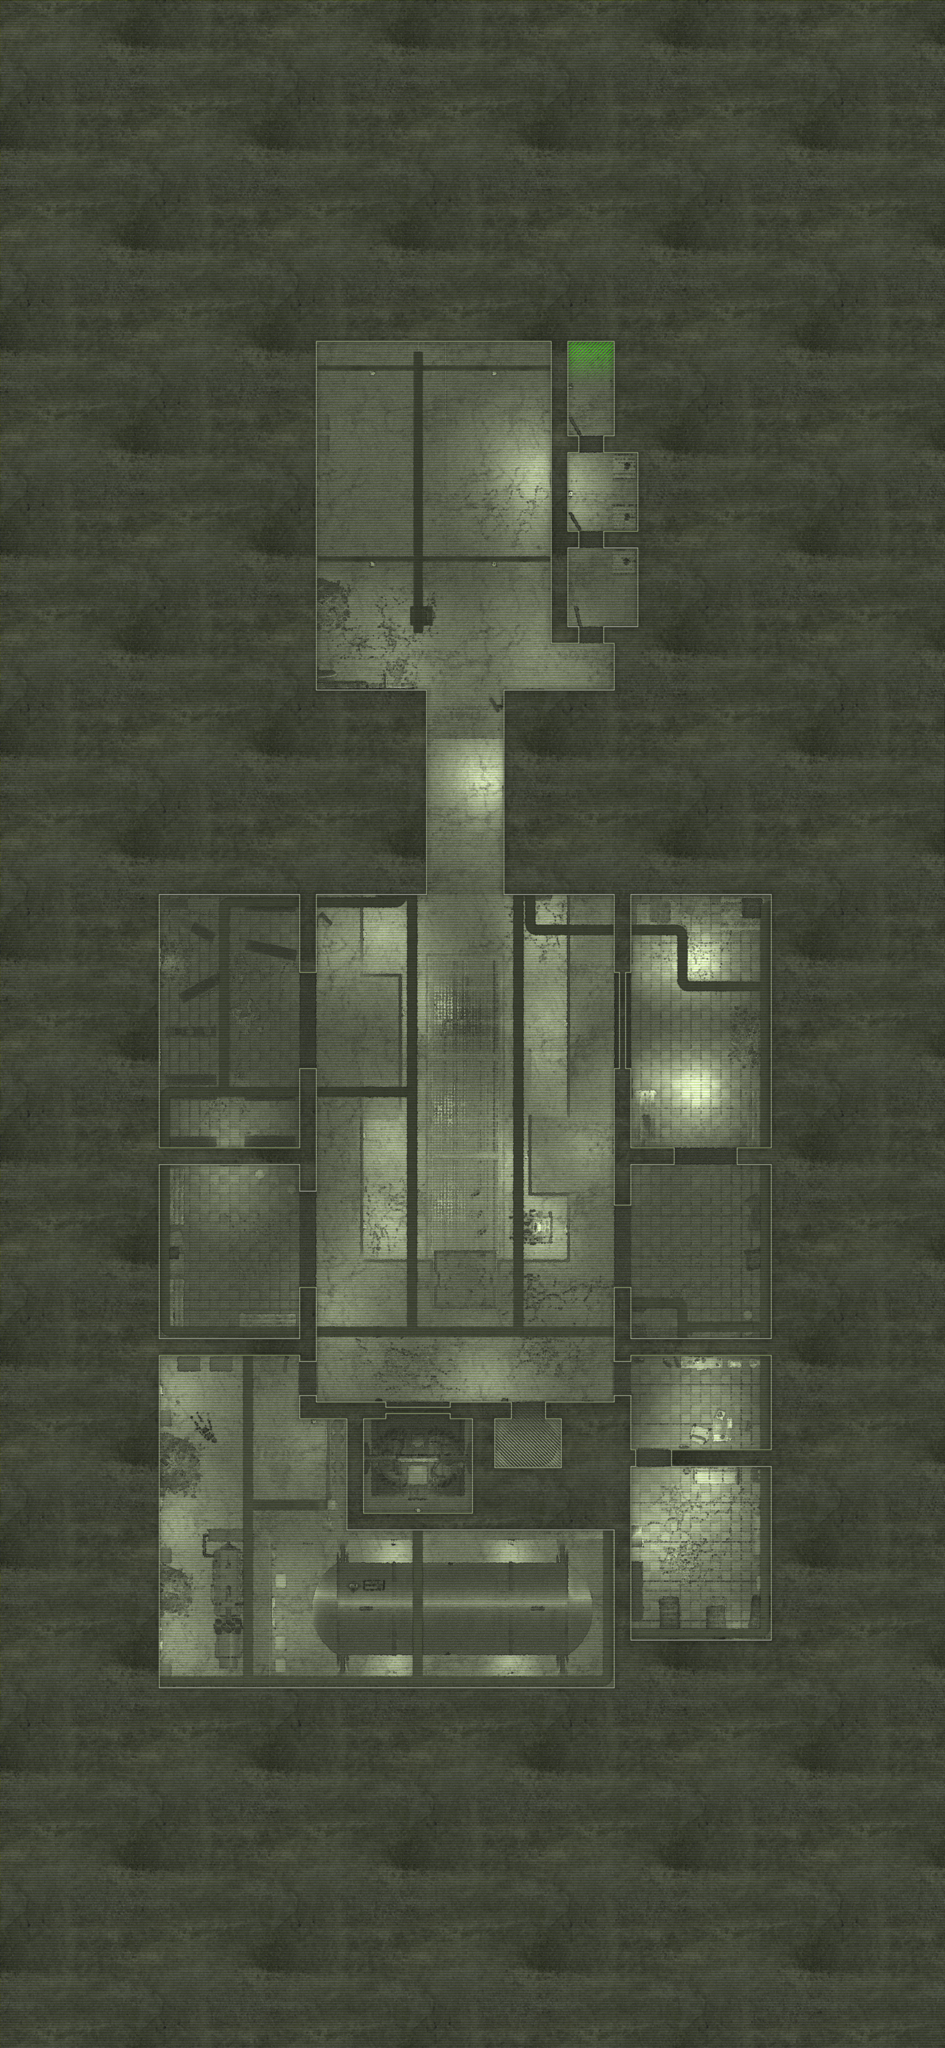 Bunker 317 - Level 1